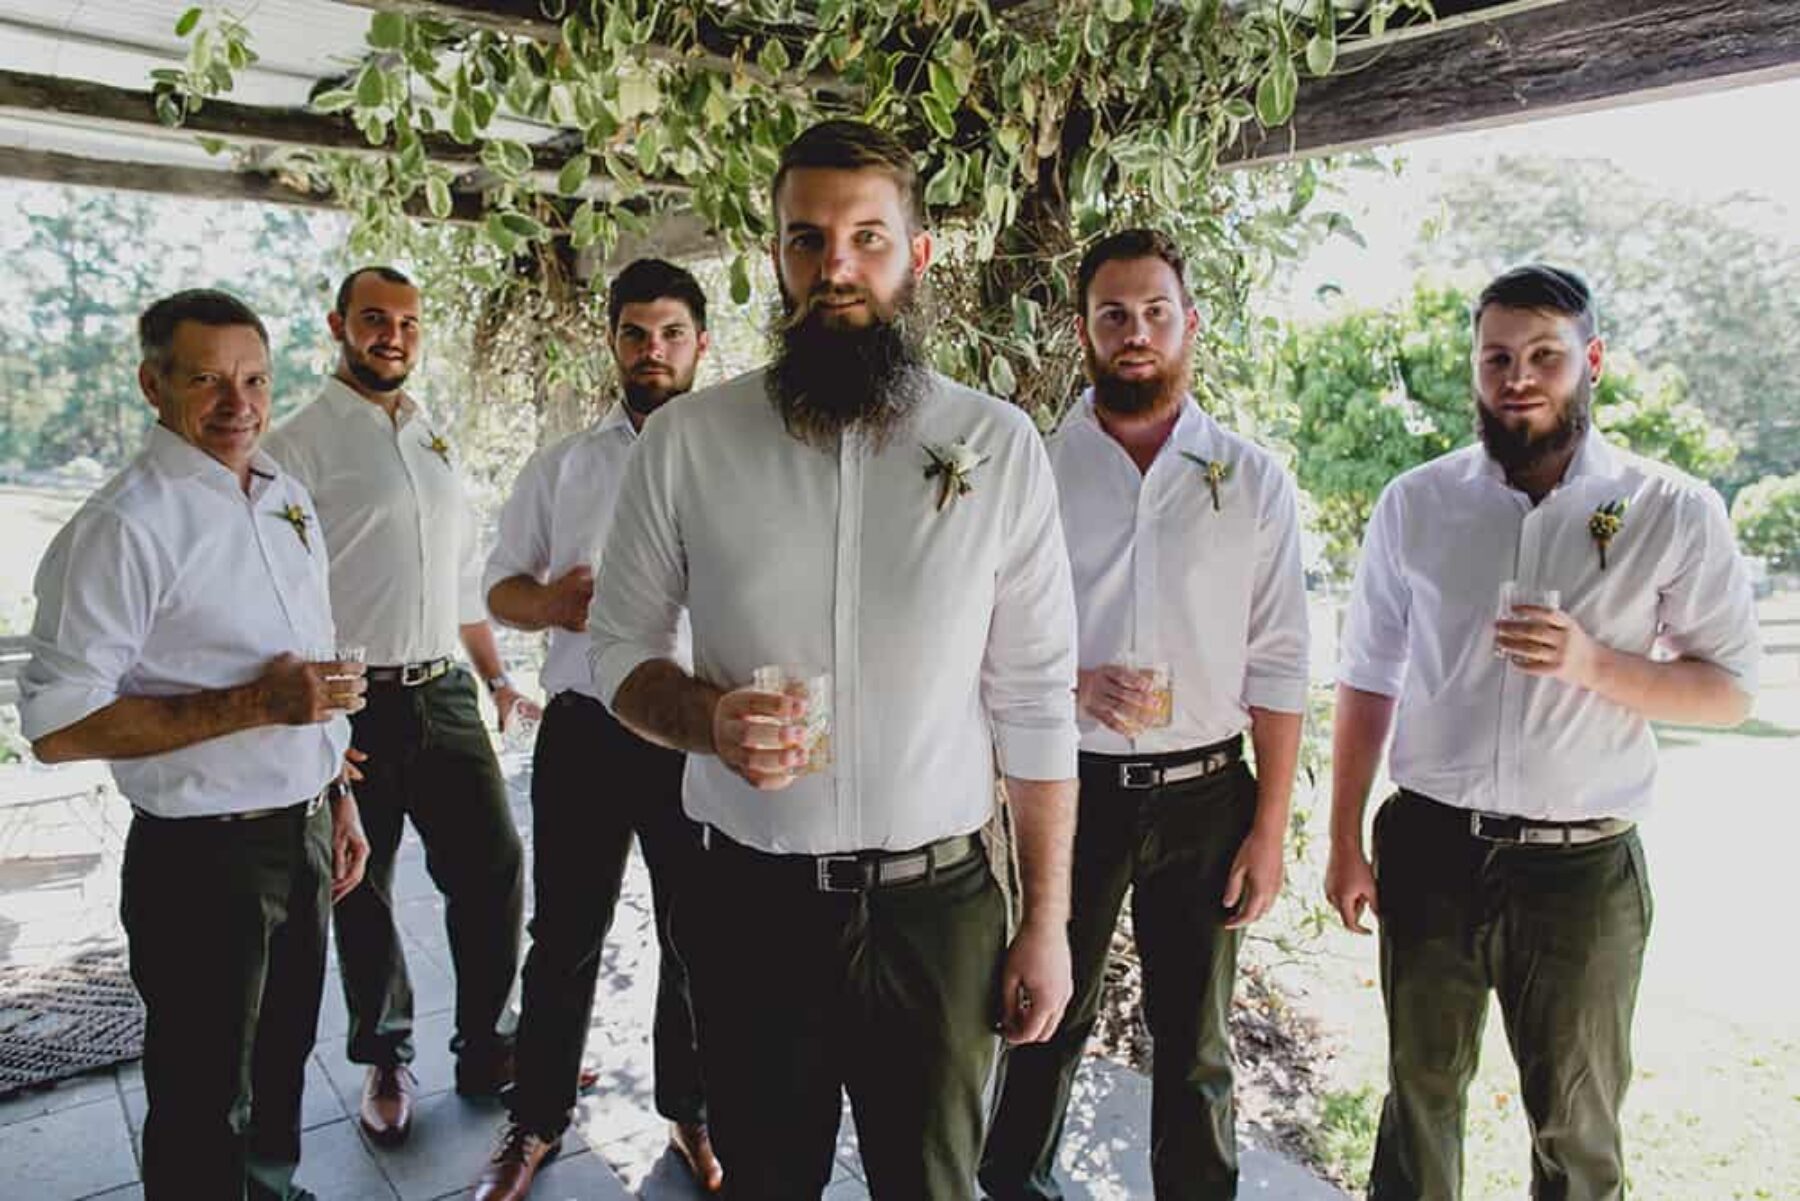 bearded groom and groomsmen